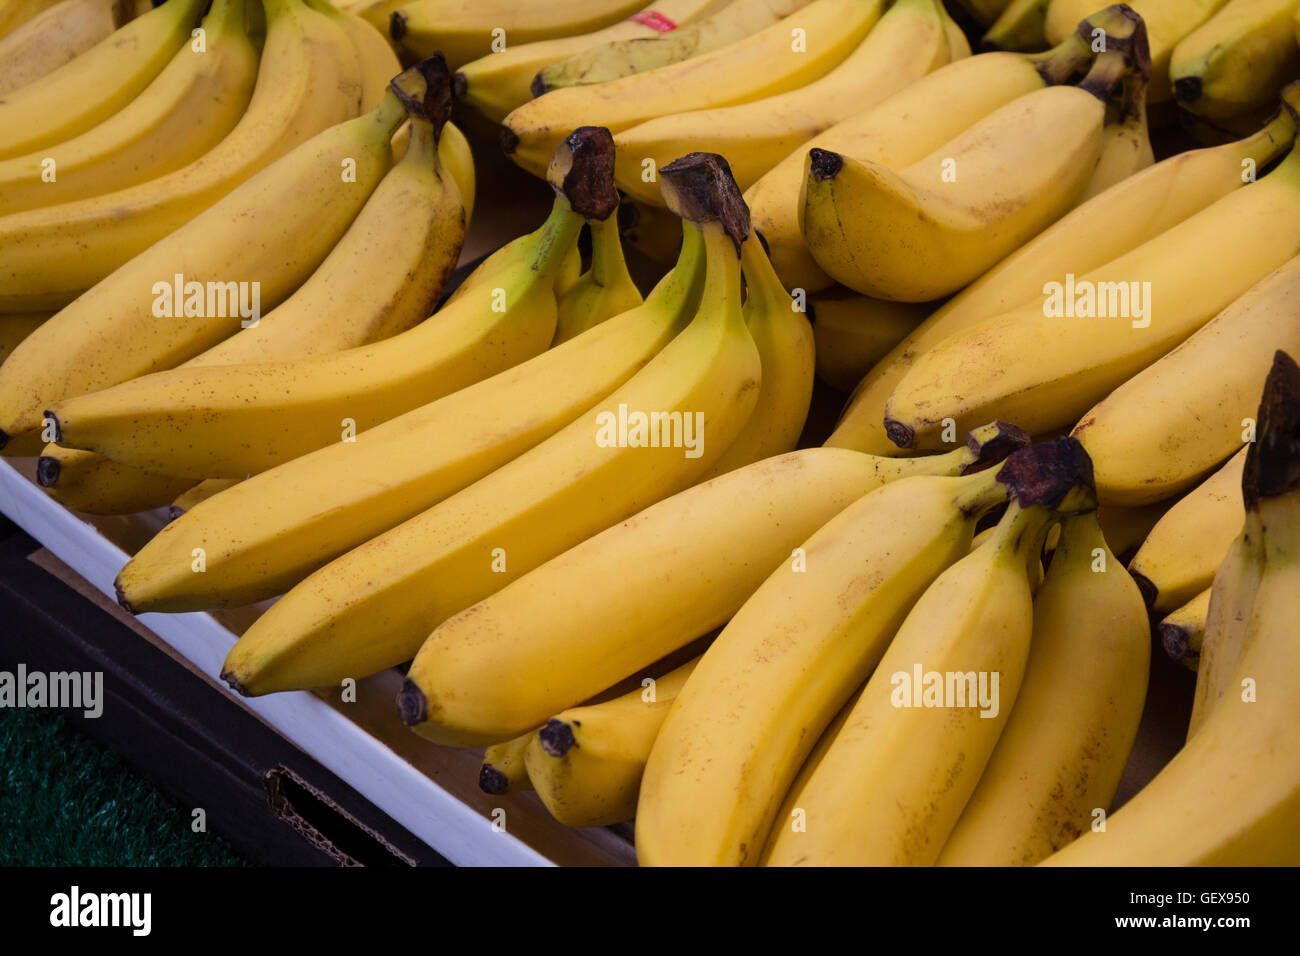 Grappolo di banane sul mercato di stallo / mercato alimentare Foto Stock